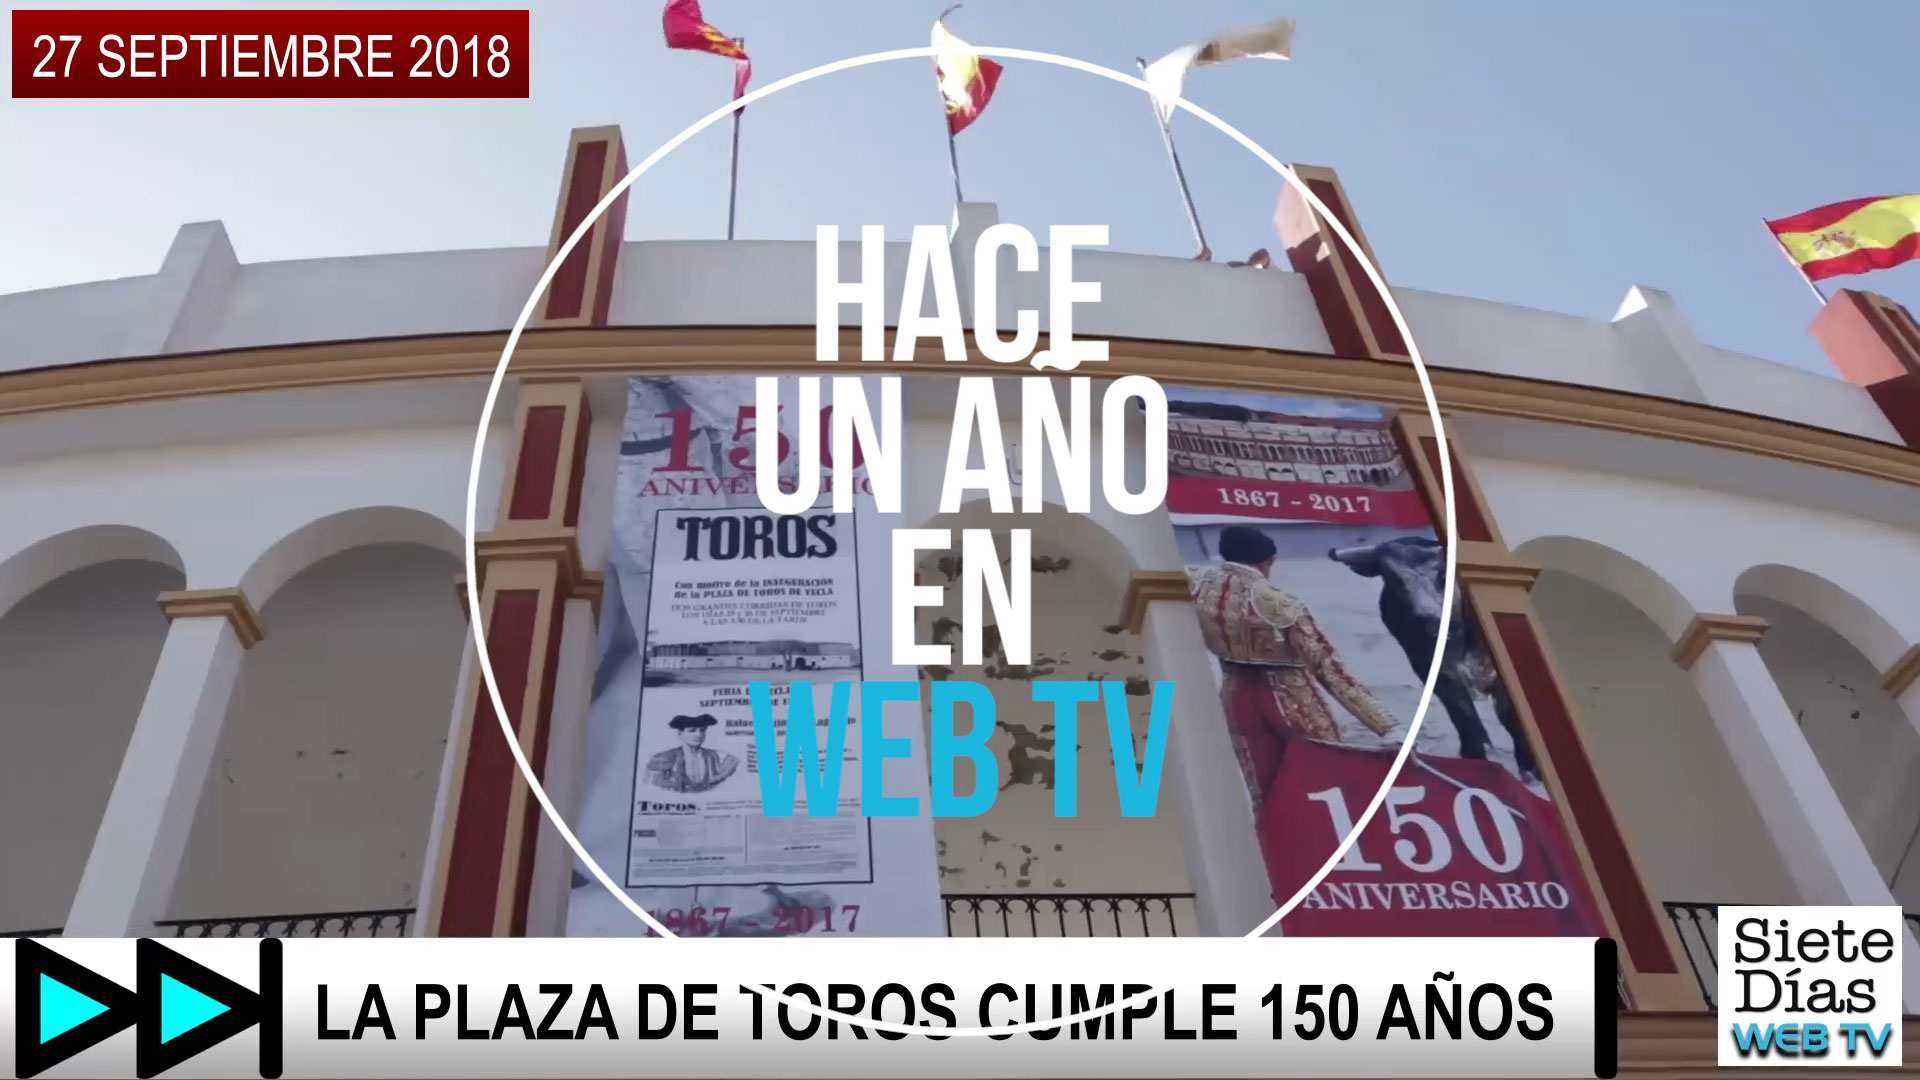 HACE UN AÑO EN WEB TV – 27 SEPTIEMBRE 2018